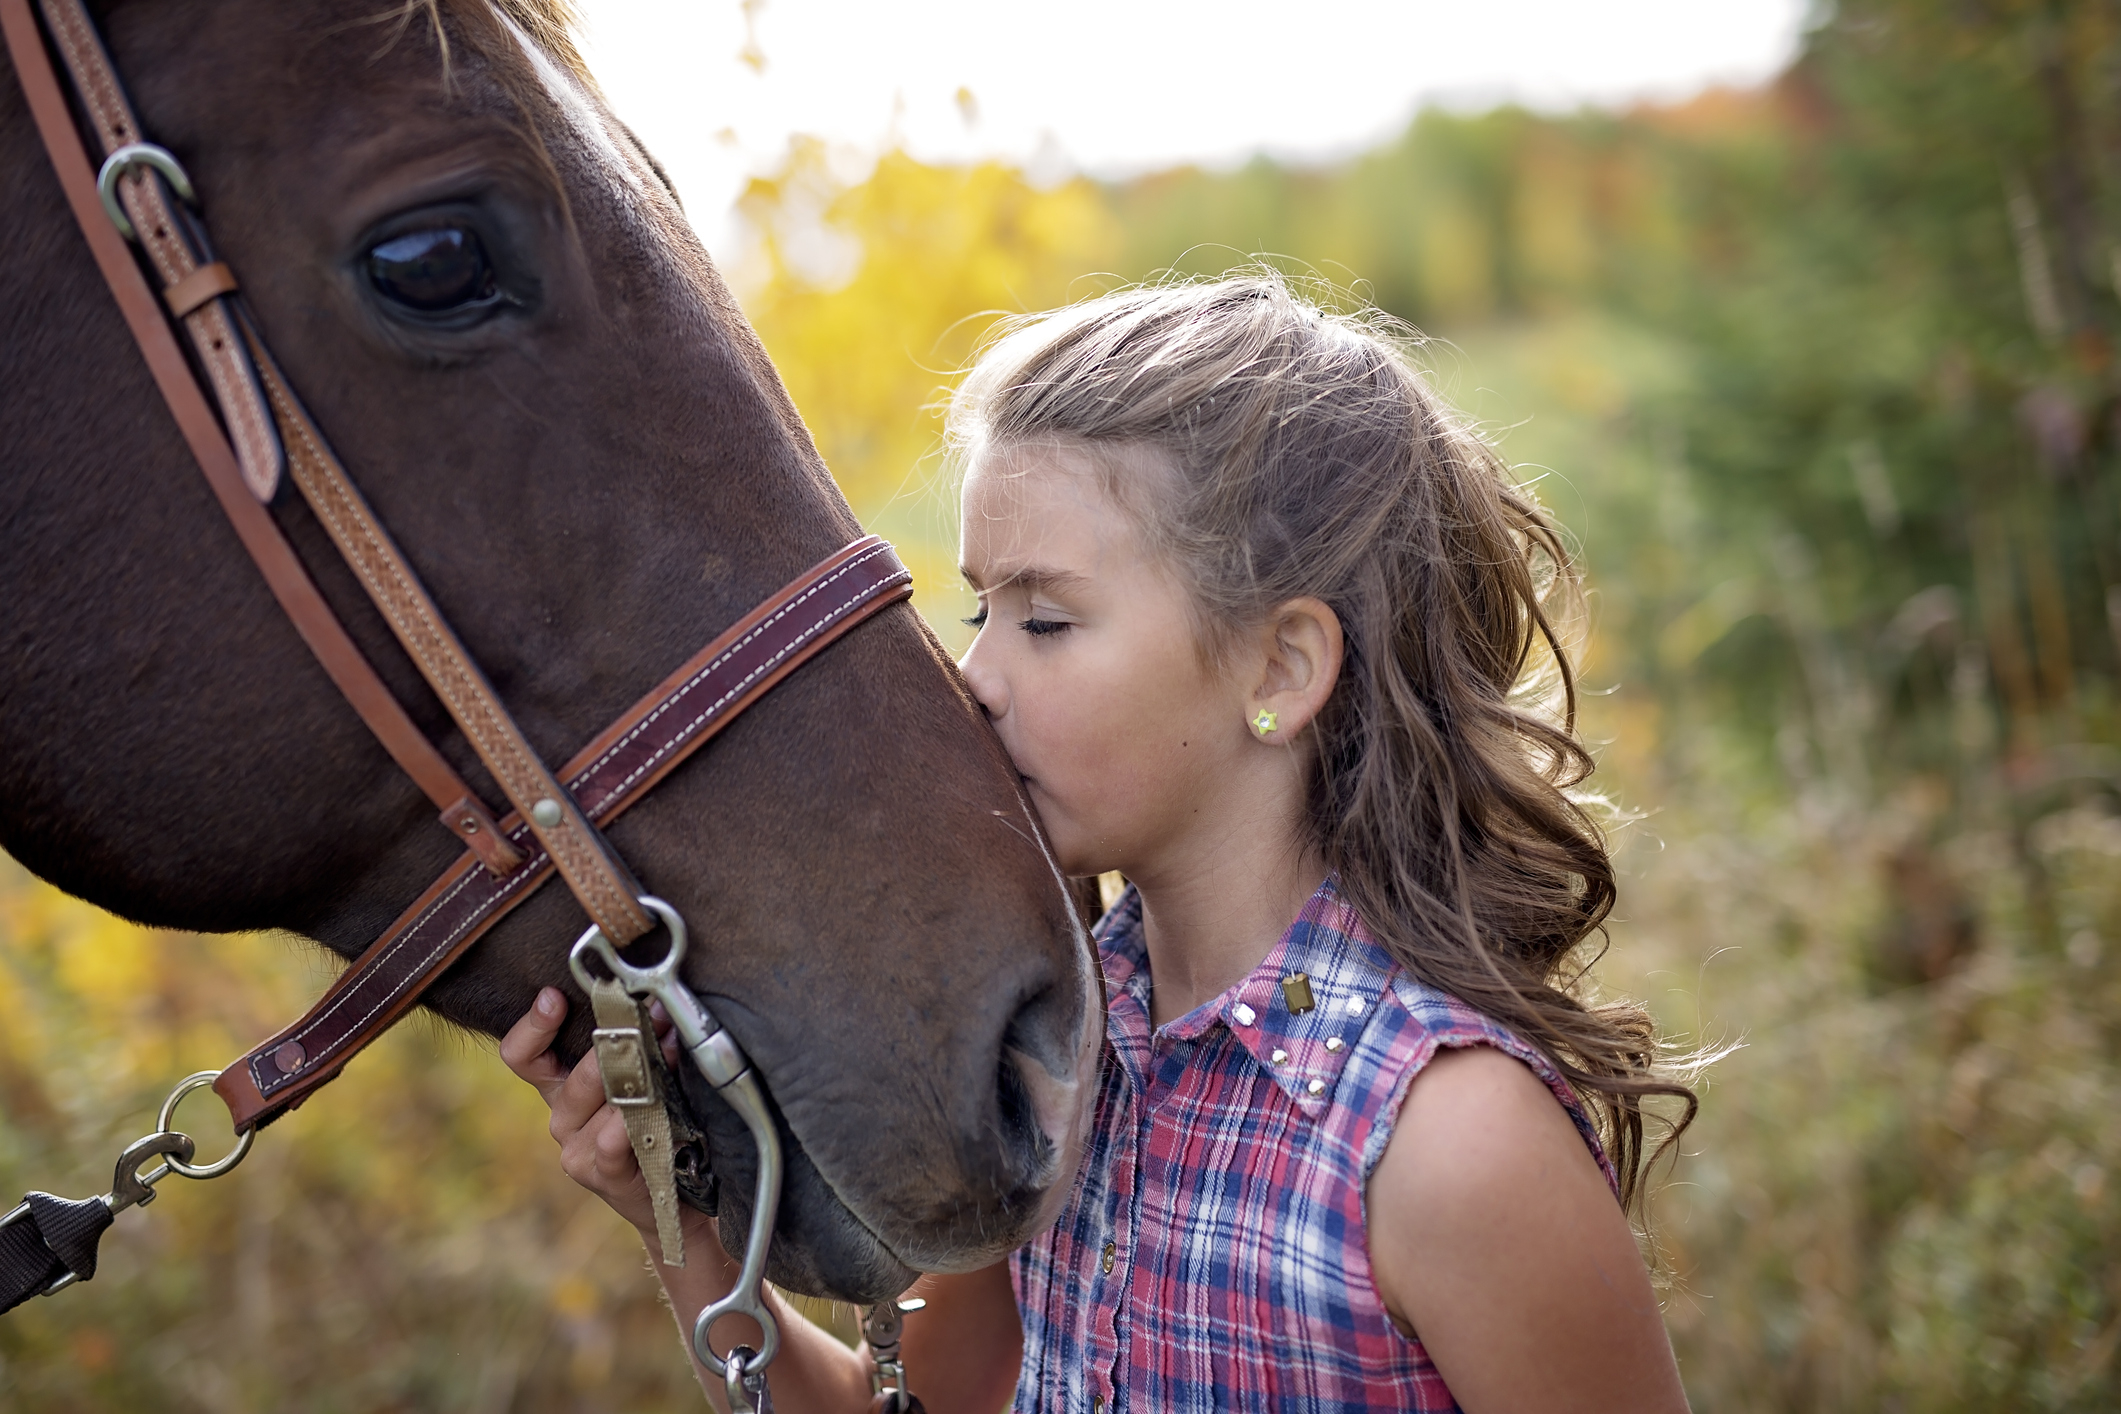 girl kissing horse